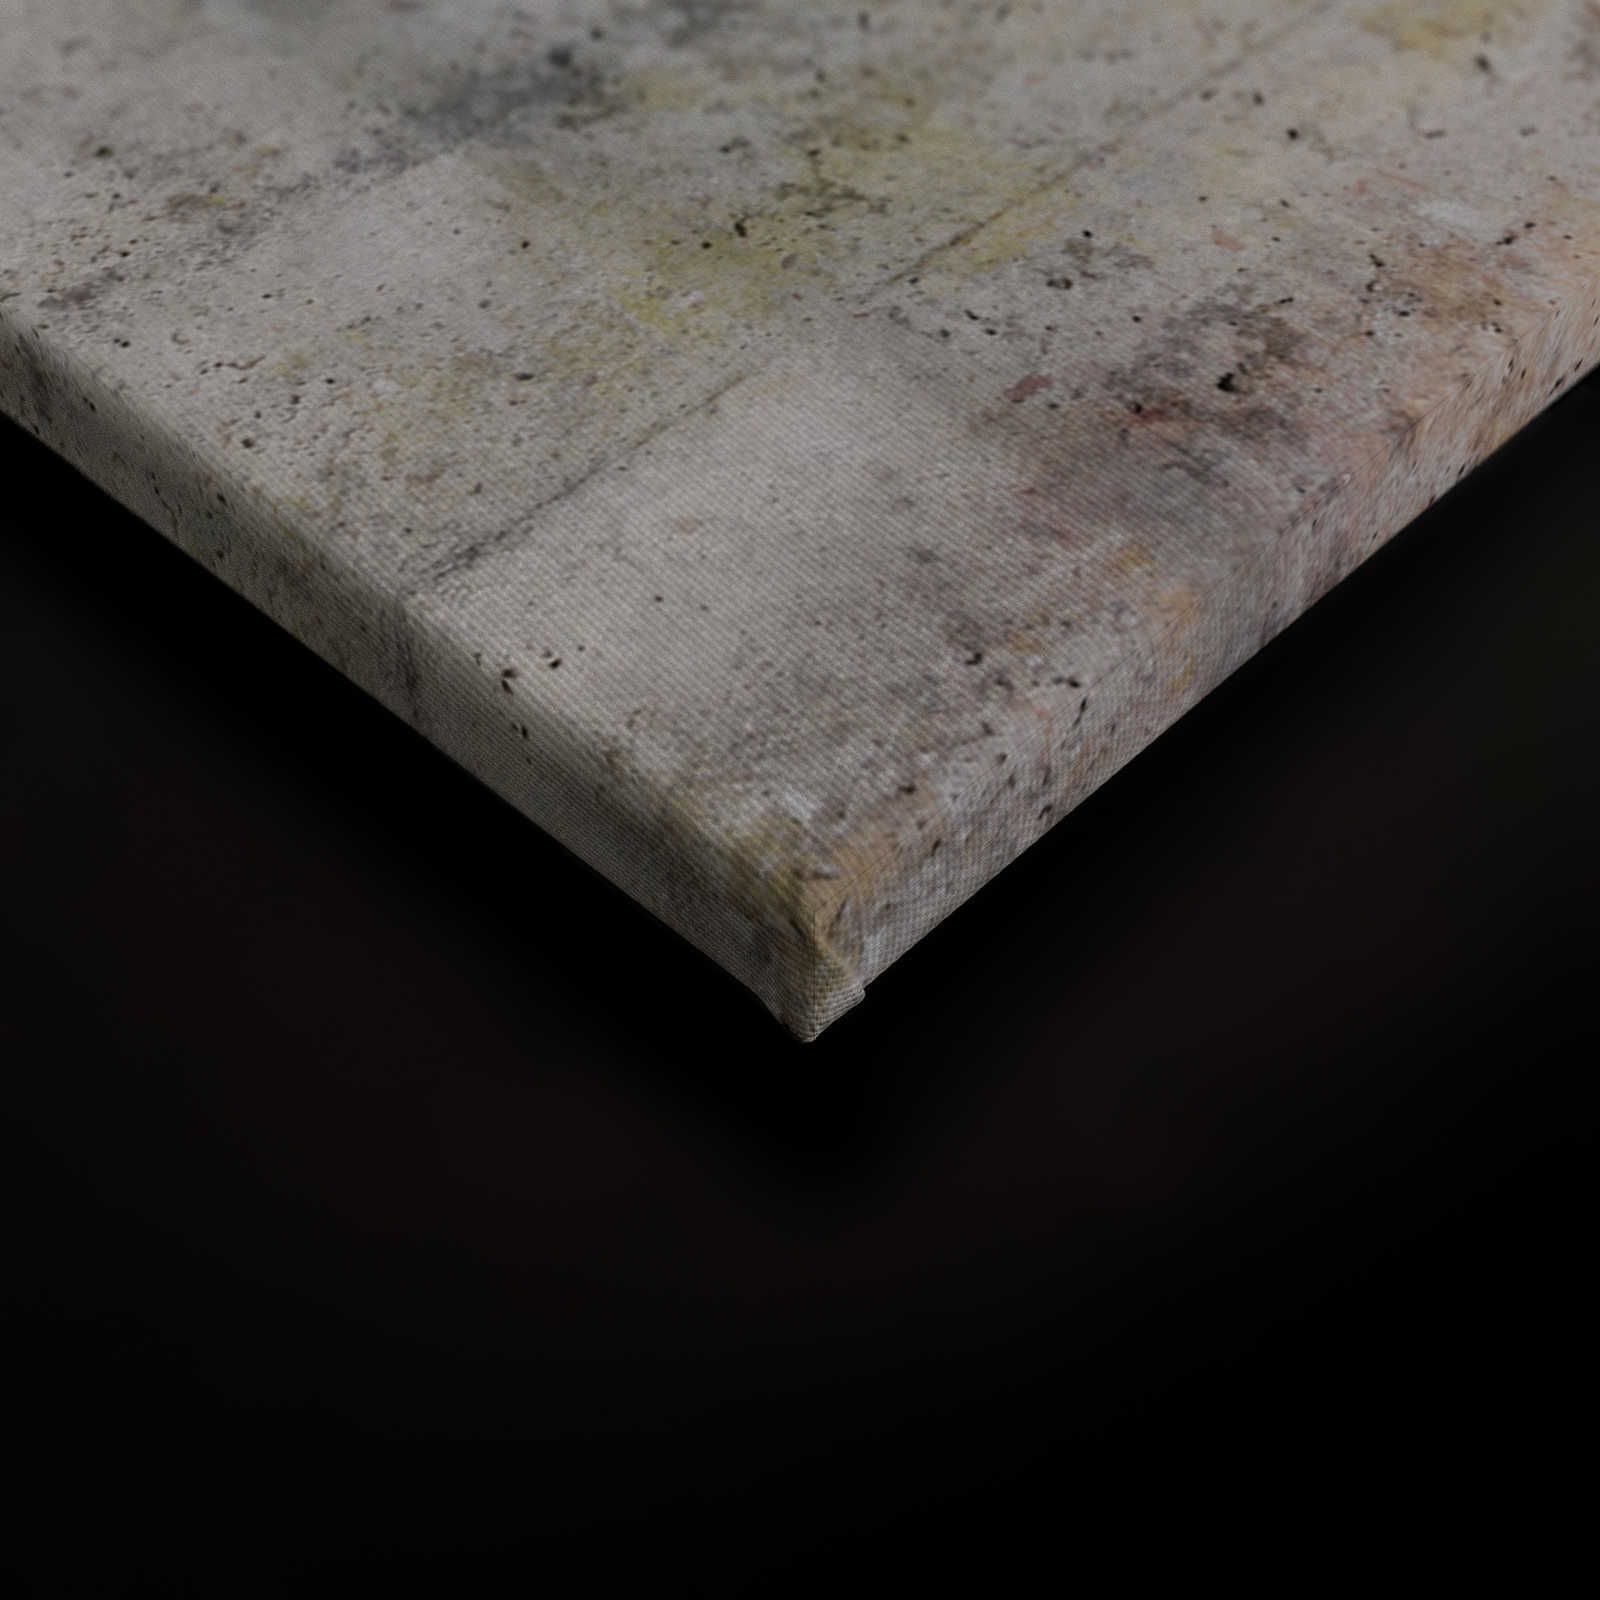             Tableau sur toile Aspect béton avec fissure - 0,90 m x 0,60 m
        